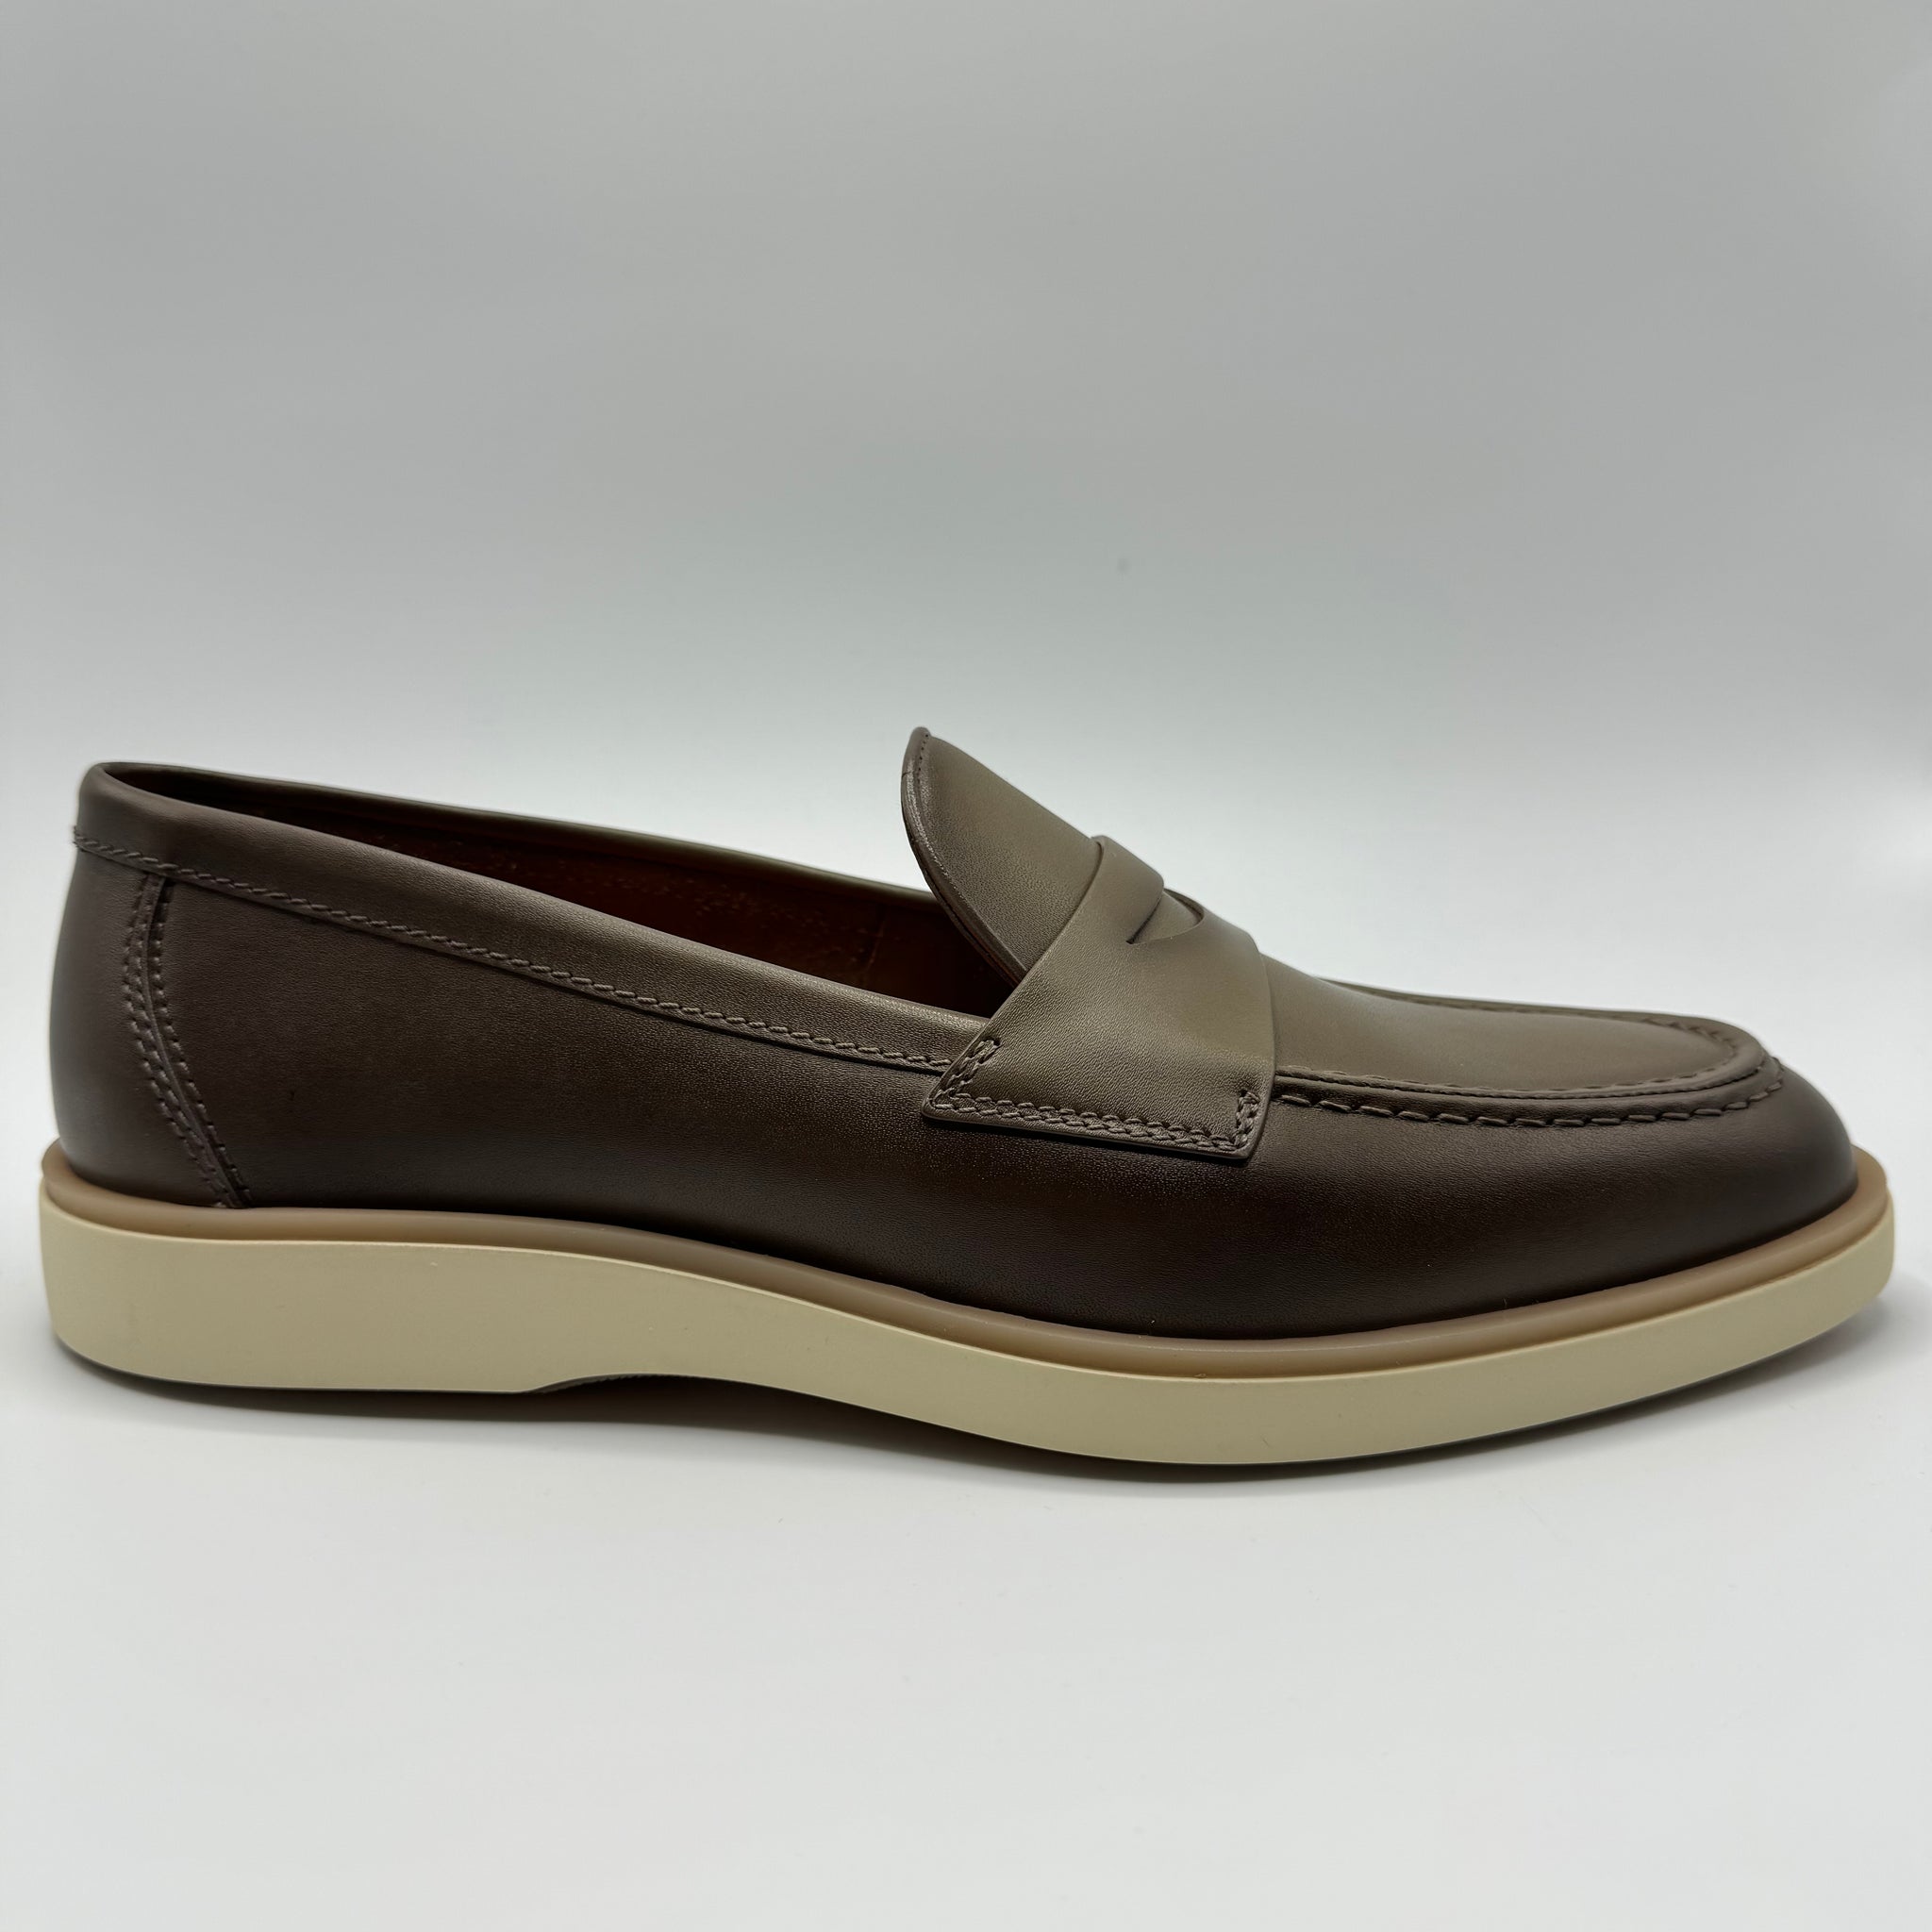 Santoni - Leather Loafer Shoe